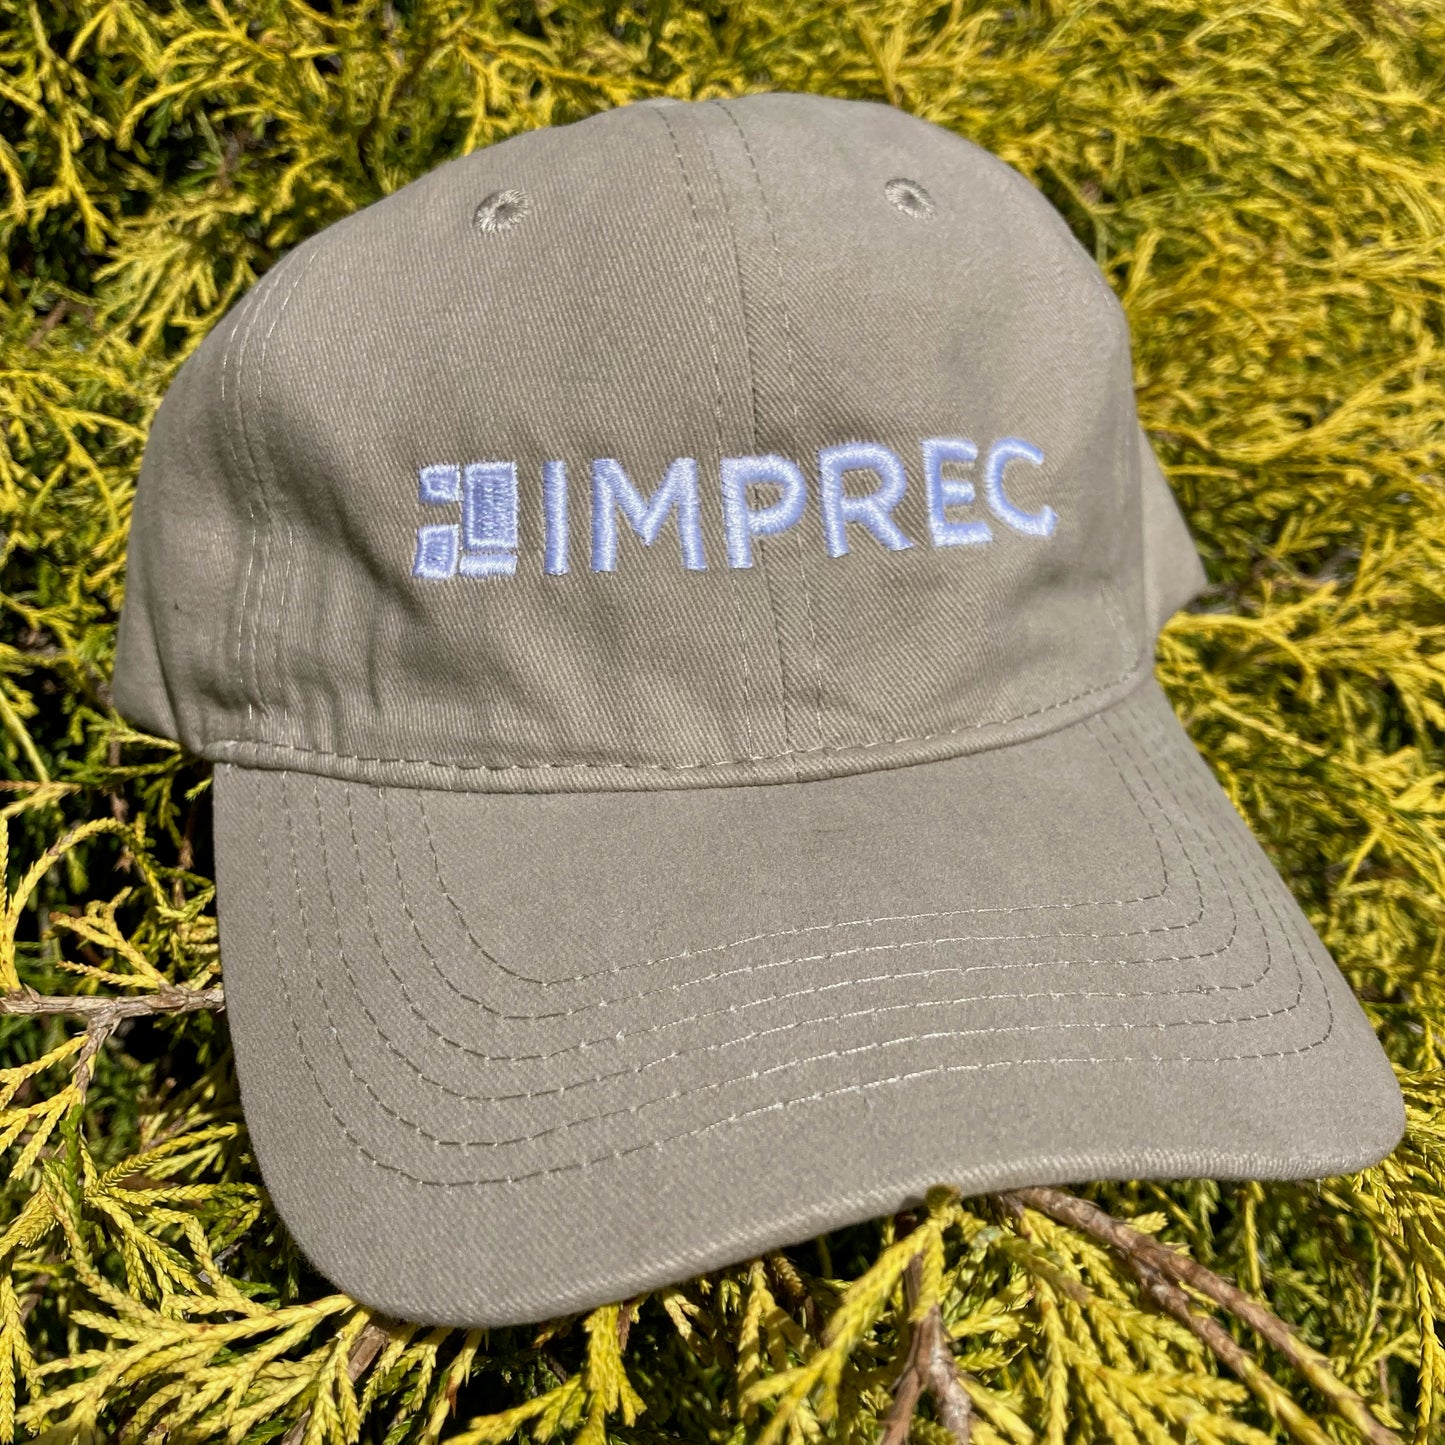 IMPREC Embroidered Logo Hat - Black or Tan